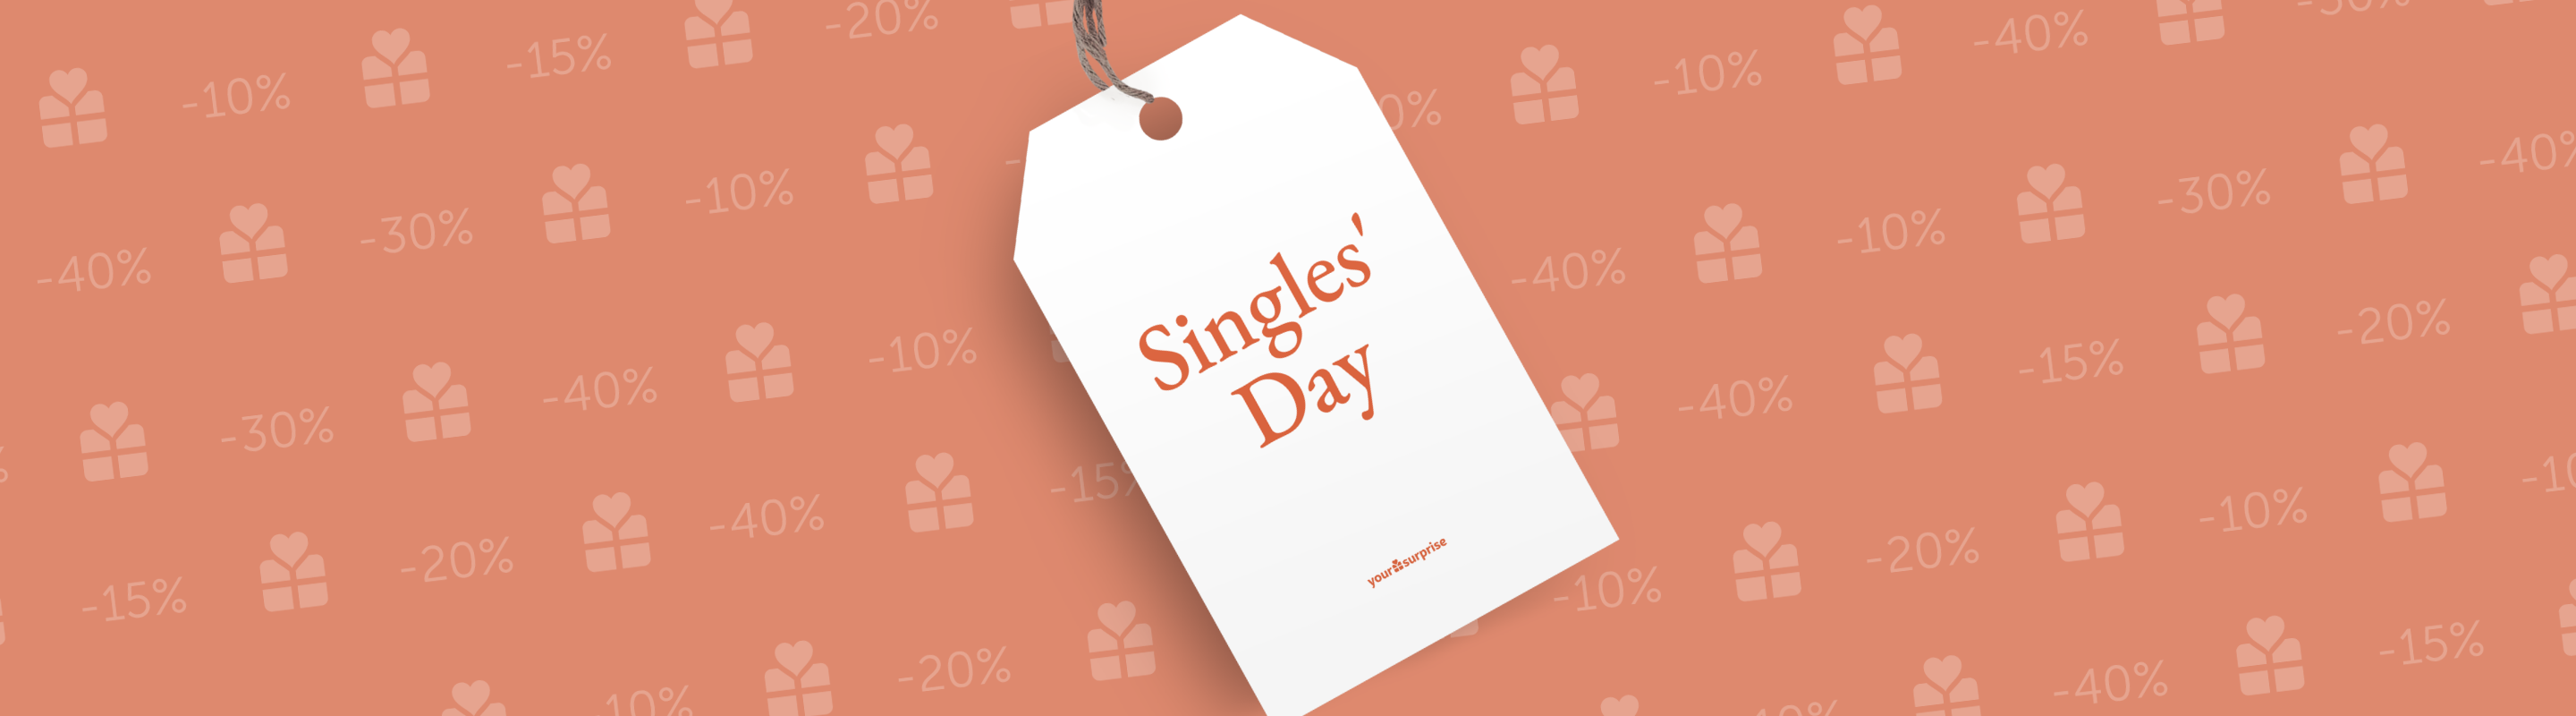 Sconti Singles' Day